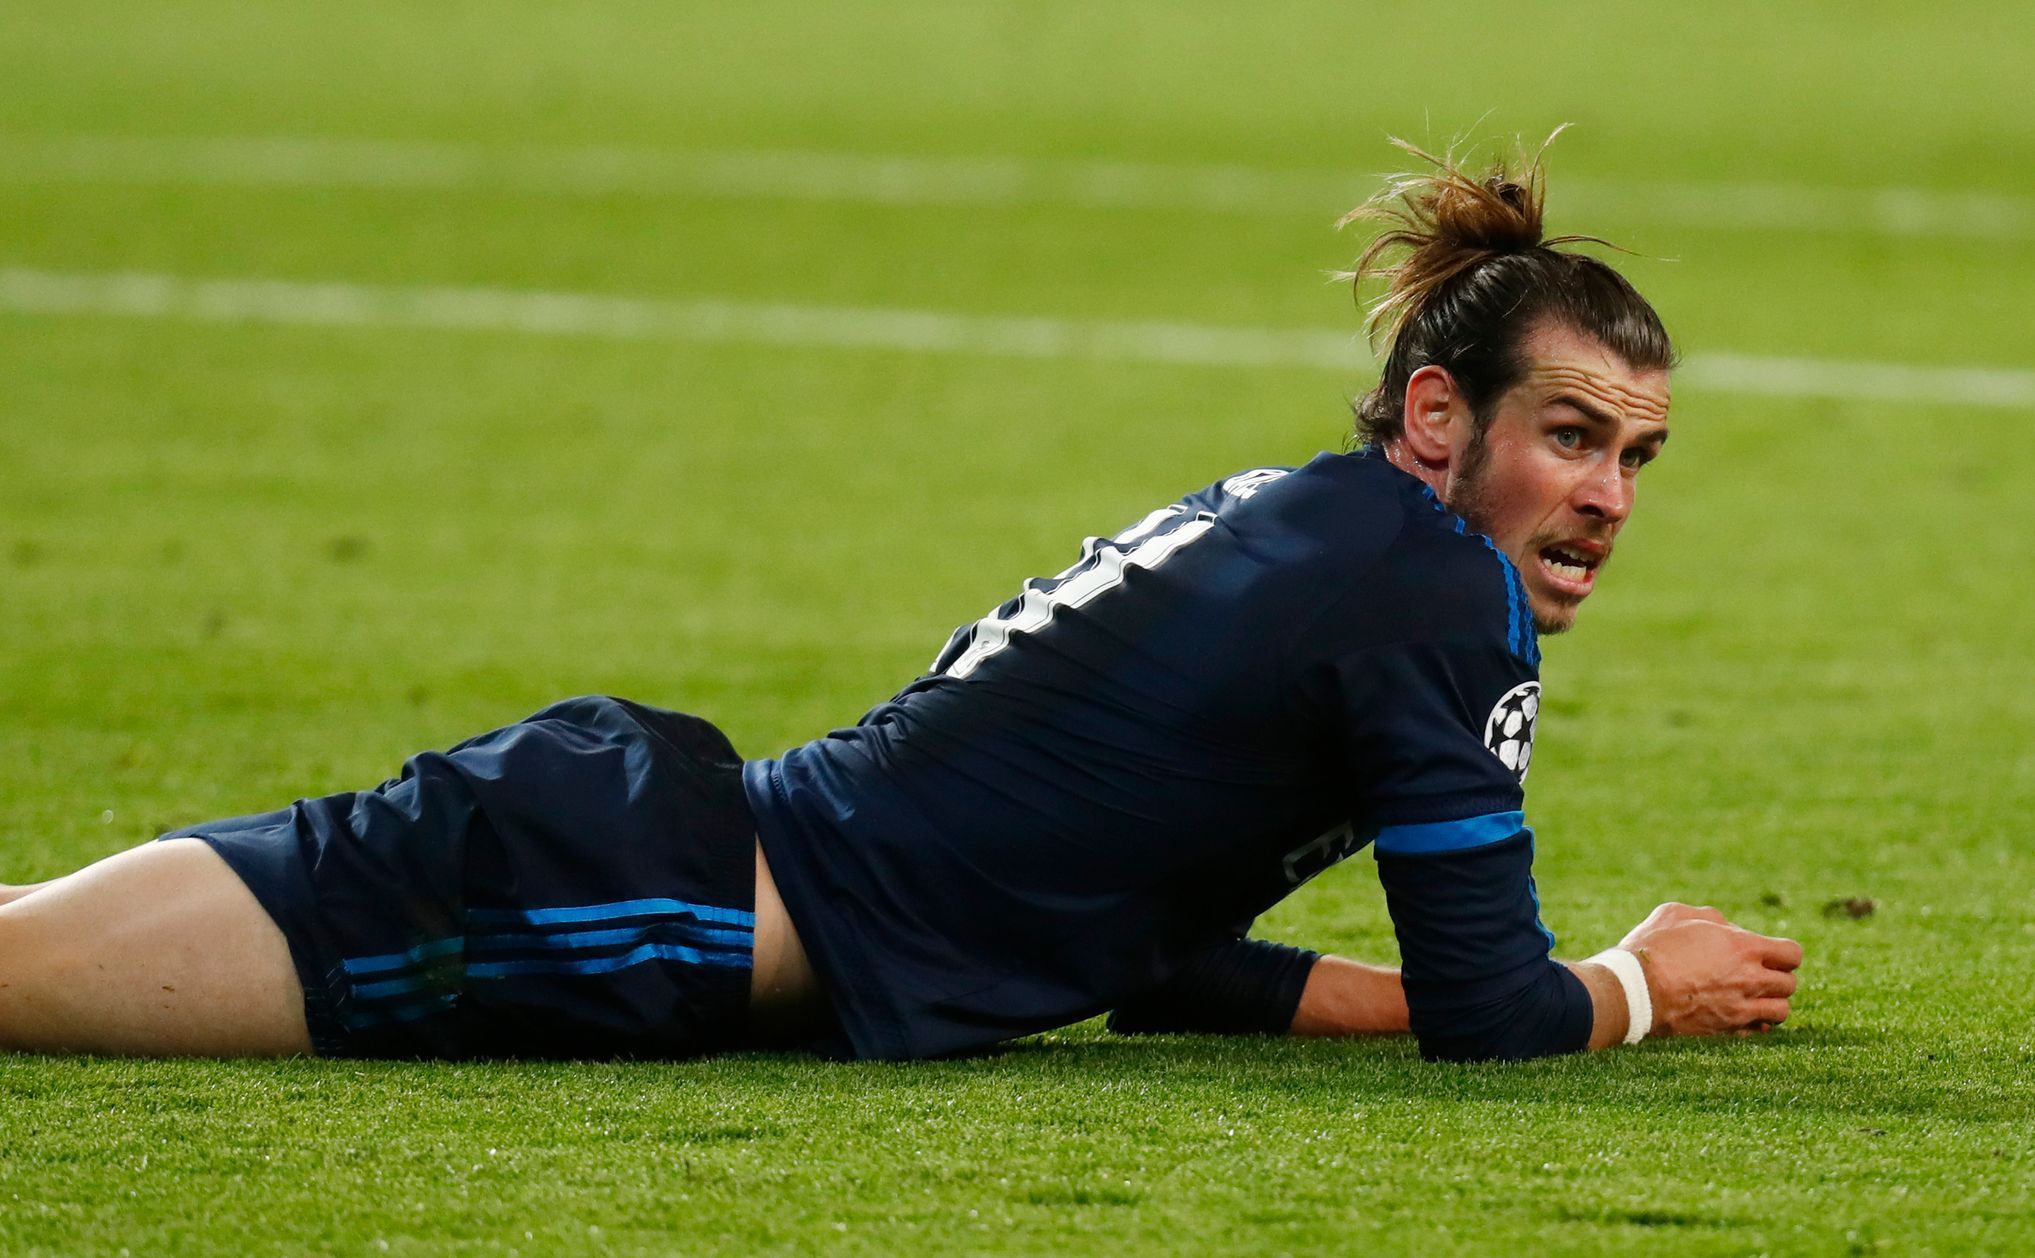 Gareth Bale v duelu s Wolsburgem ve čtvrtfinále Ligy mistrů 2016